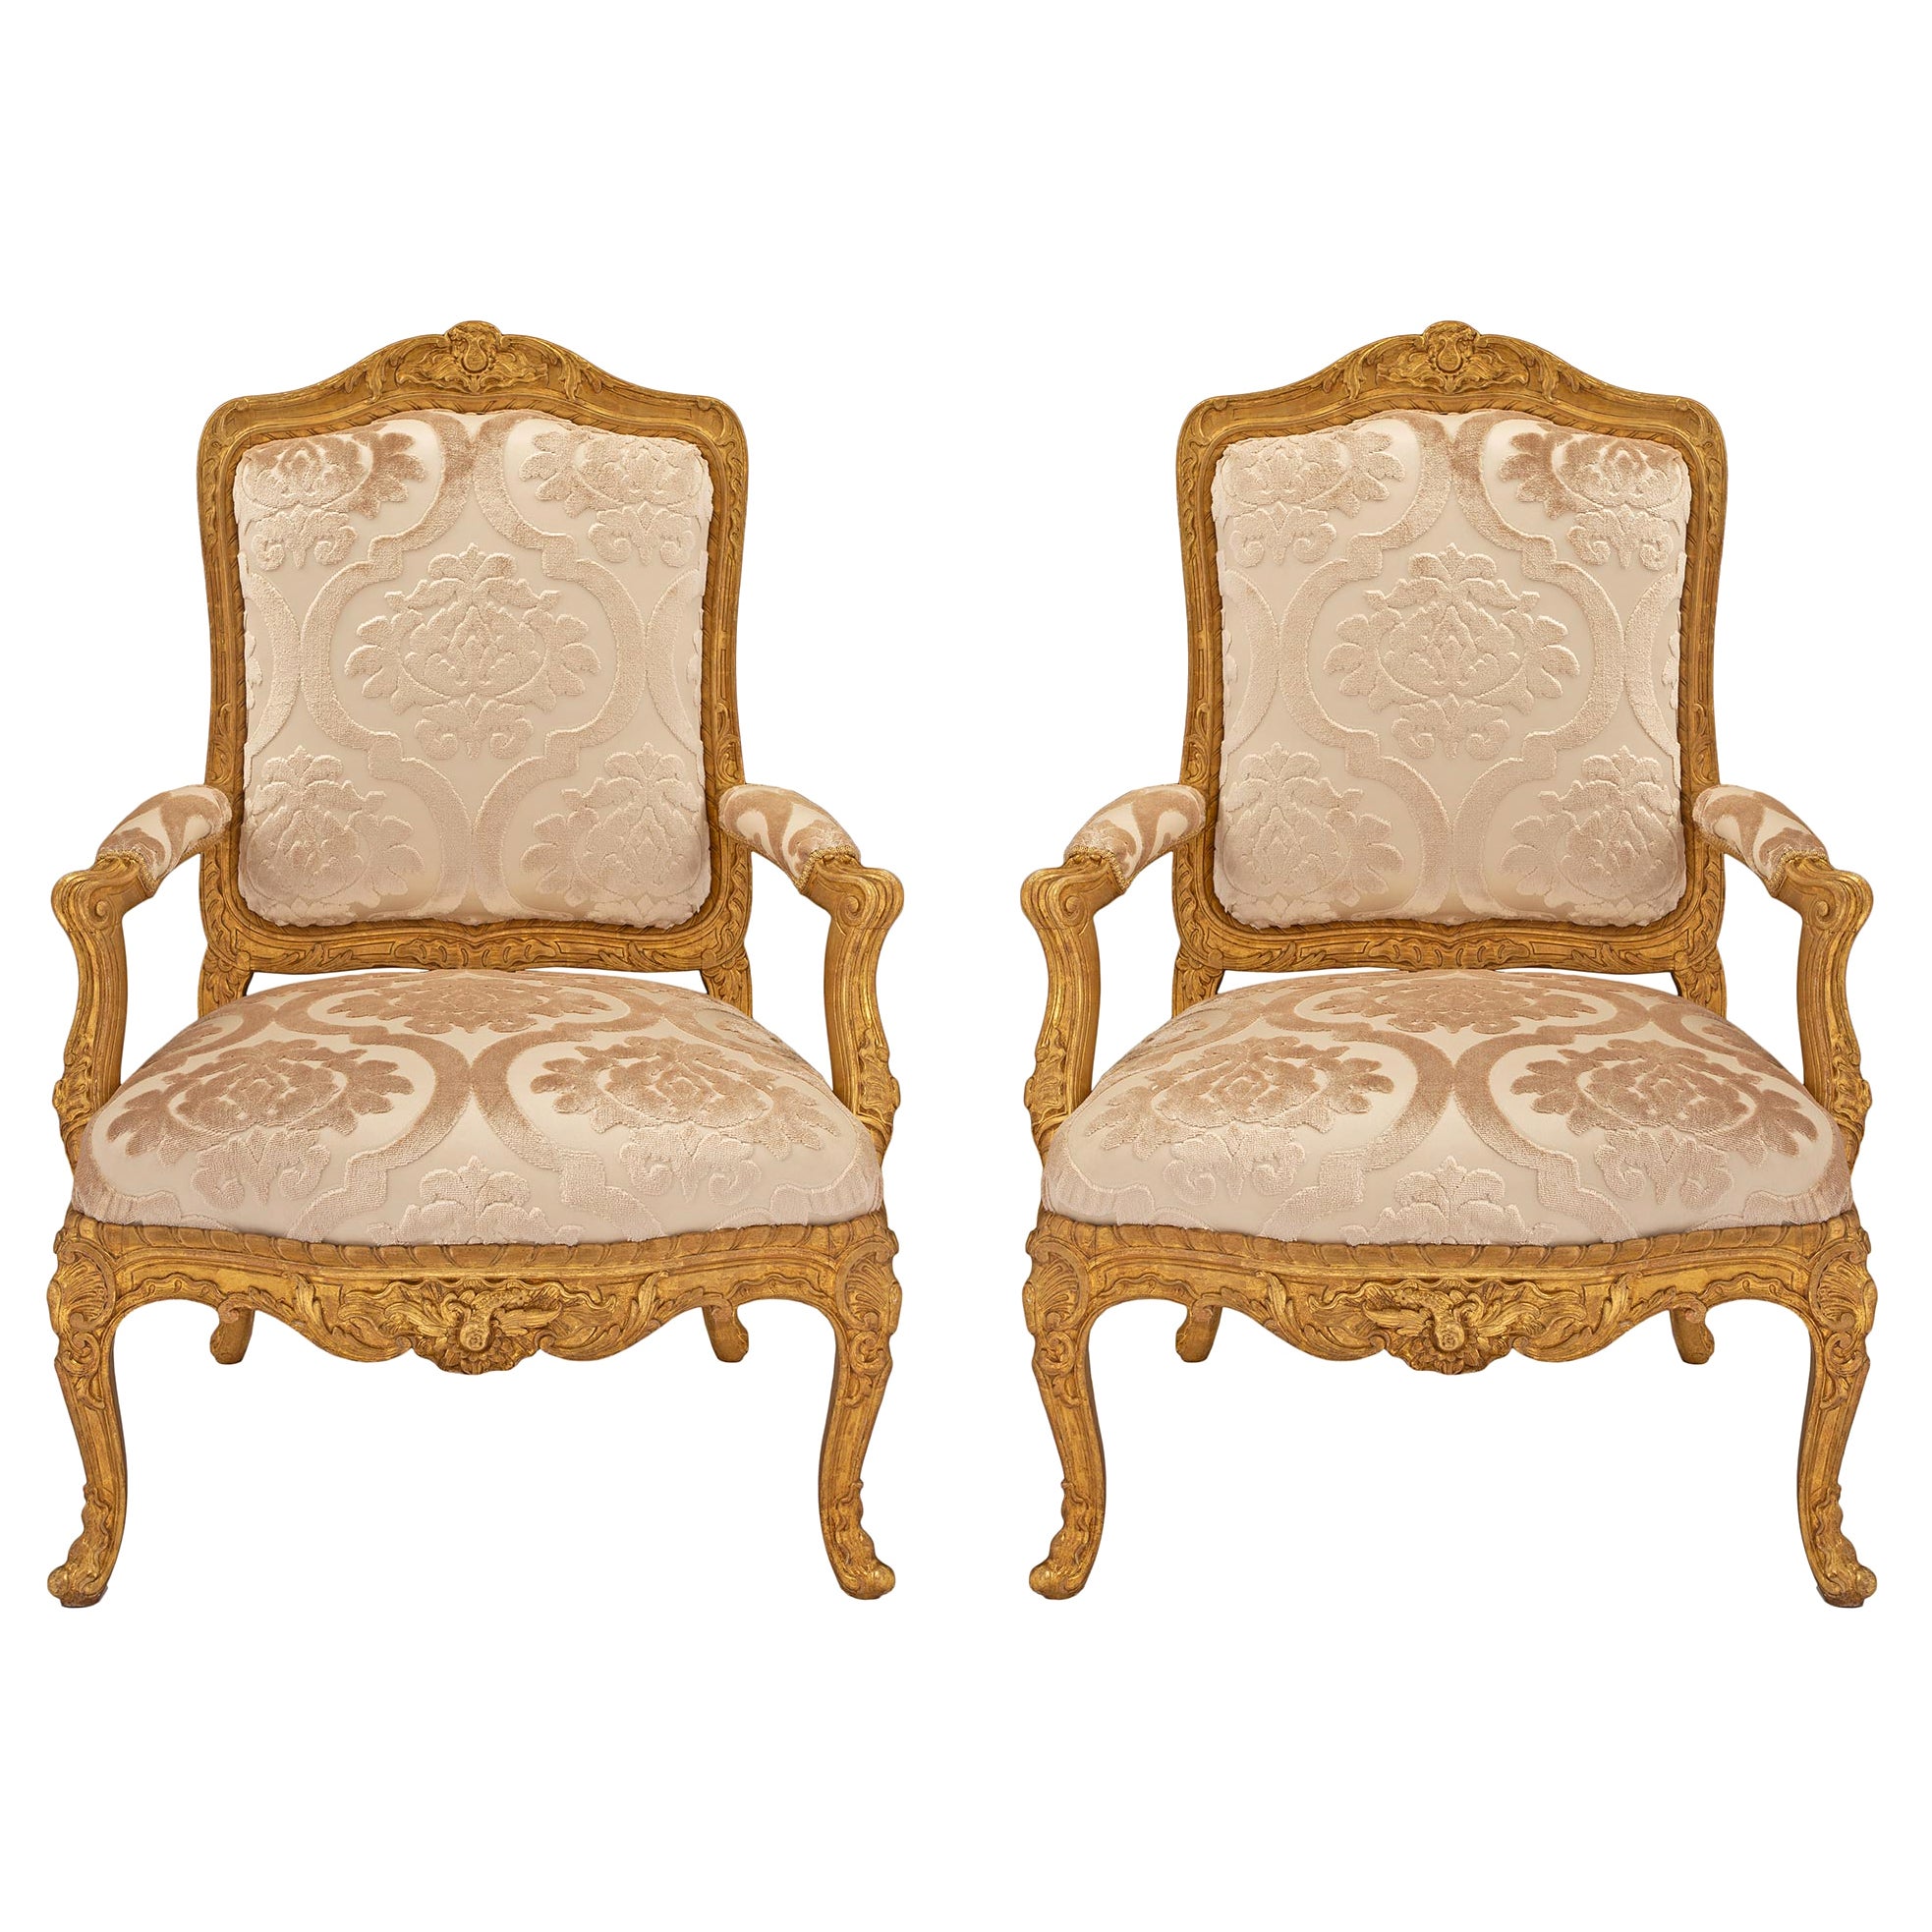 Paire de fauteuils français en bois doré du début du XIXe siècle de style Louis XV